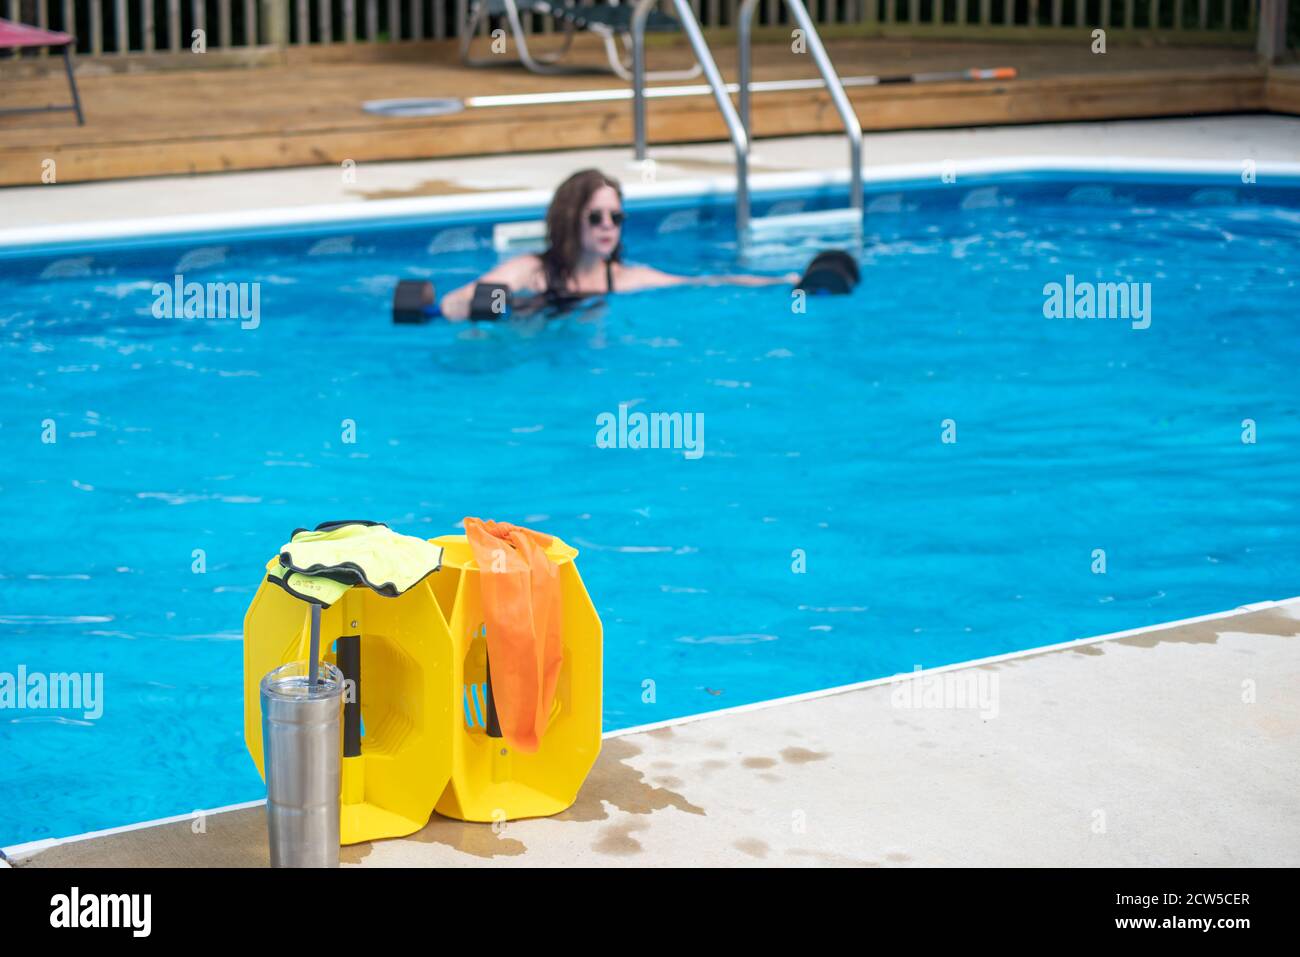 Donna che si allenava da sola in piscina con messa a fuoco sull'attrezzatura da ginnastica in acqua a bordo piscina in primo piano. Luce naturale, spazio di copia, distanza sociale Foto Stock